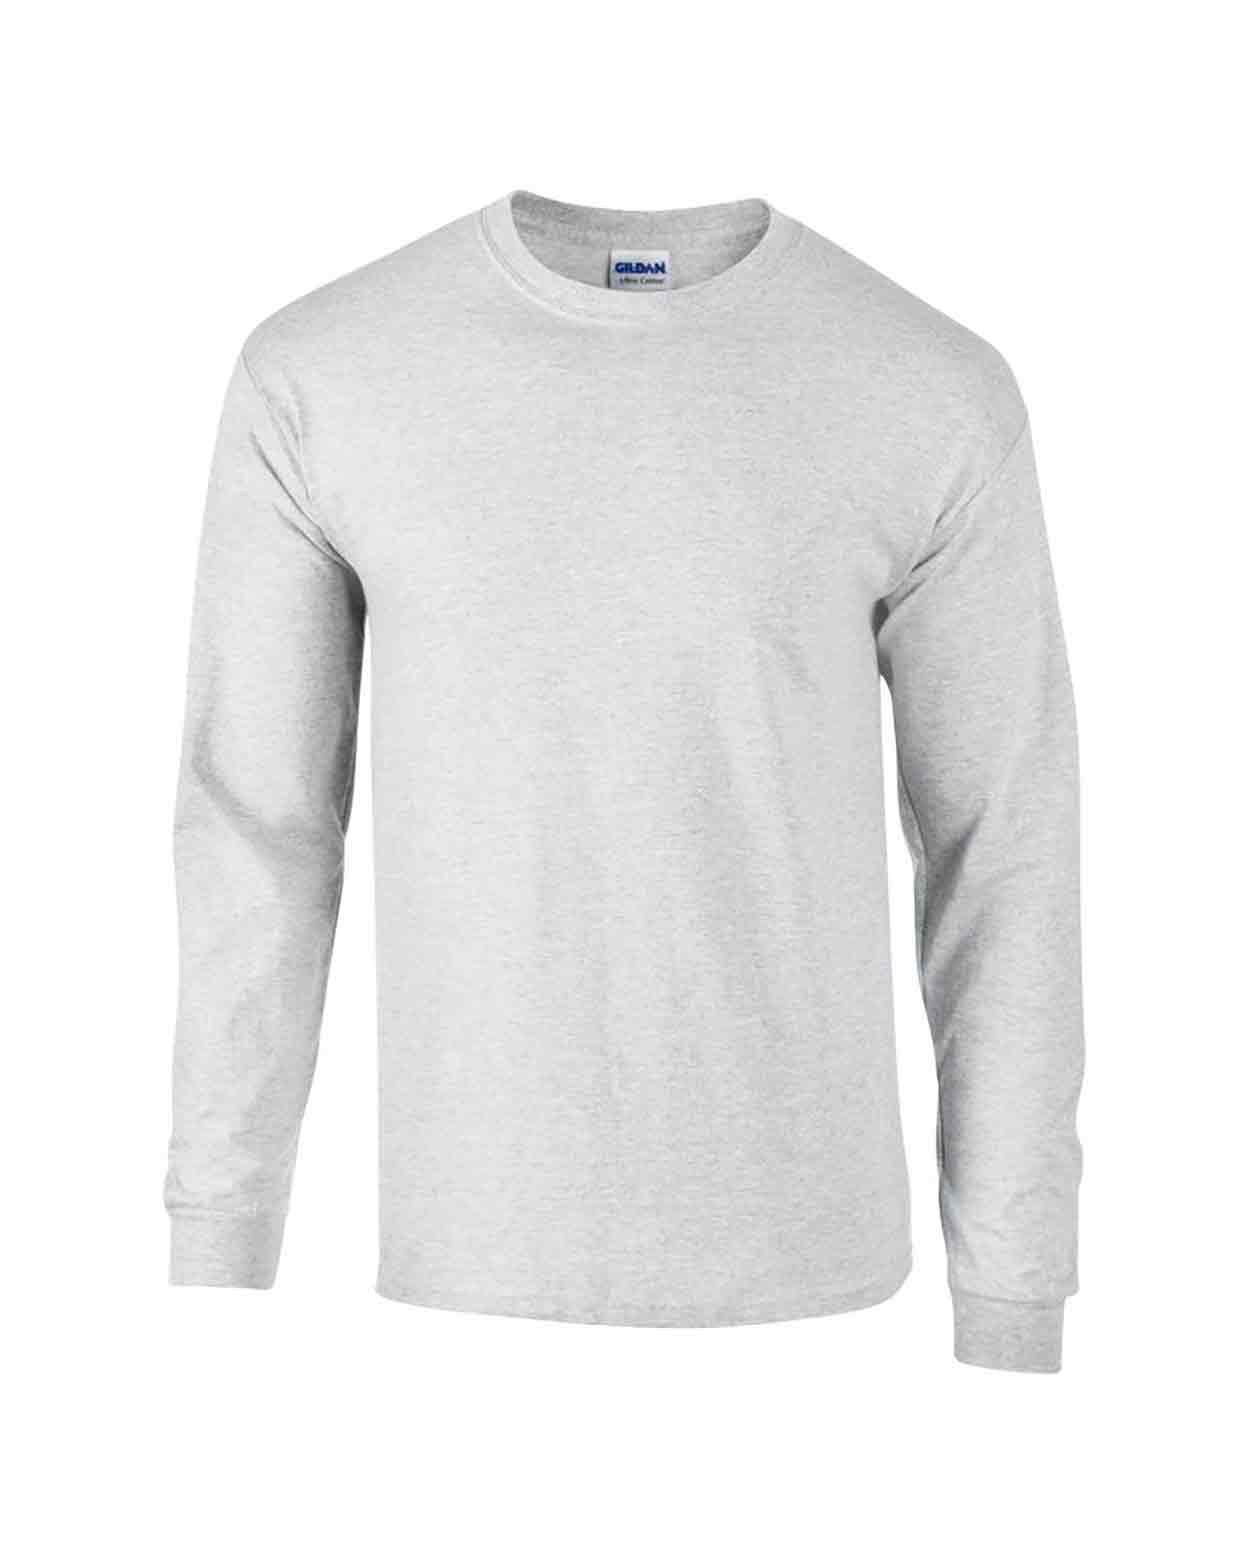 Gildan GD14 Ultra Cotton Long Sleeve T-Shirt - Mens Long Sleeve T-Shirts -  Unisex / Men's T Shirt Alternatives - Unisex / Men's T Shirts - T Shirts -  Leisurewear - Best Workwear